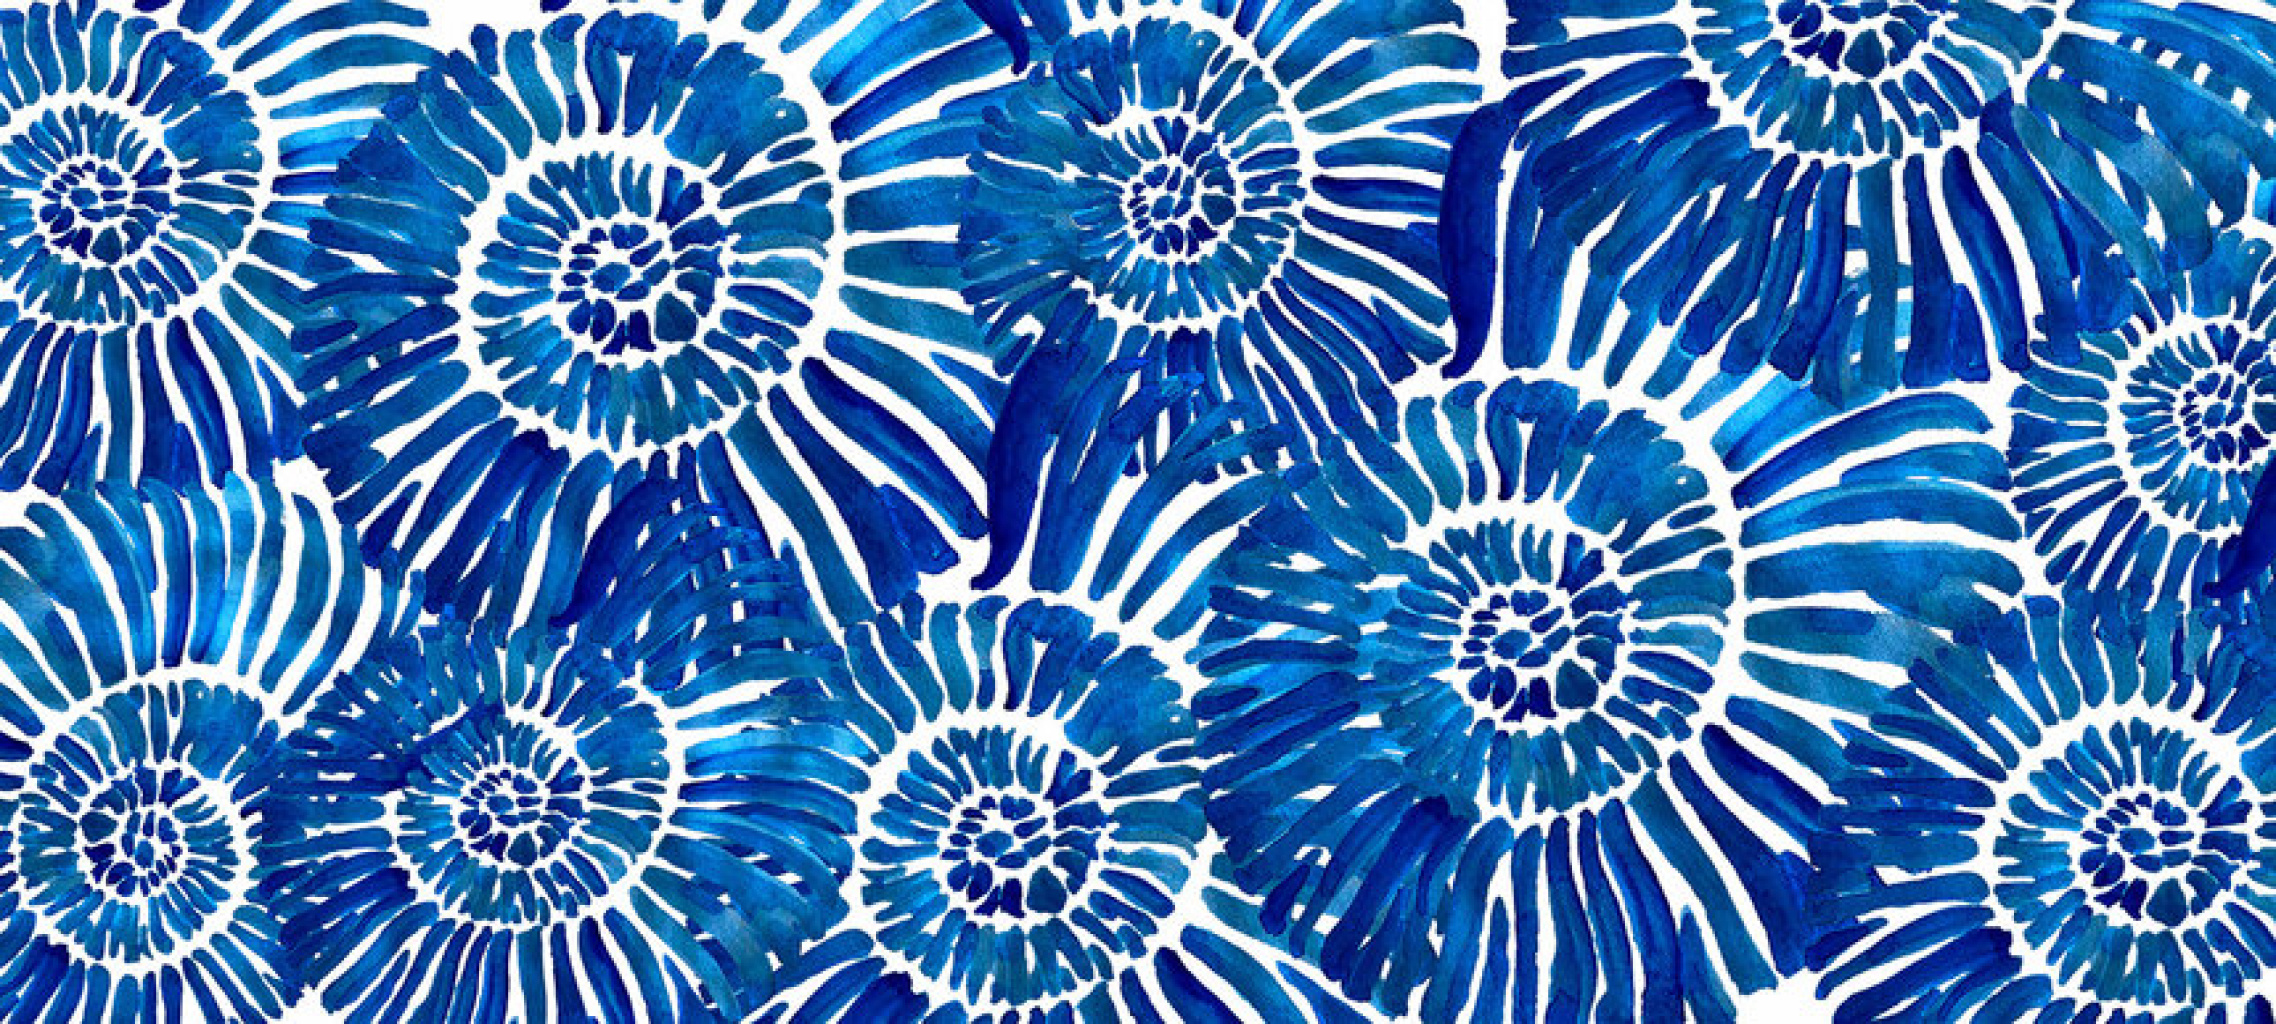 Quadro Caracois azuis por Sussu e Juju -  CATEGORIAS